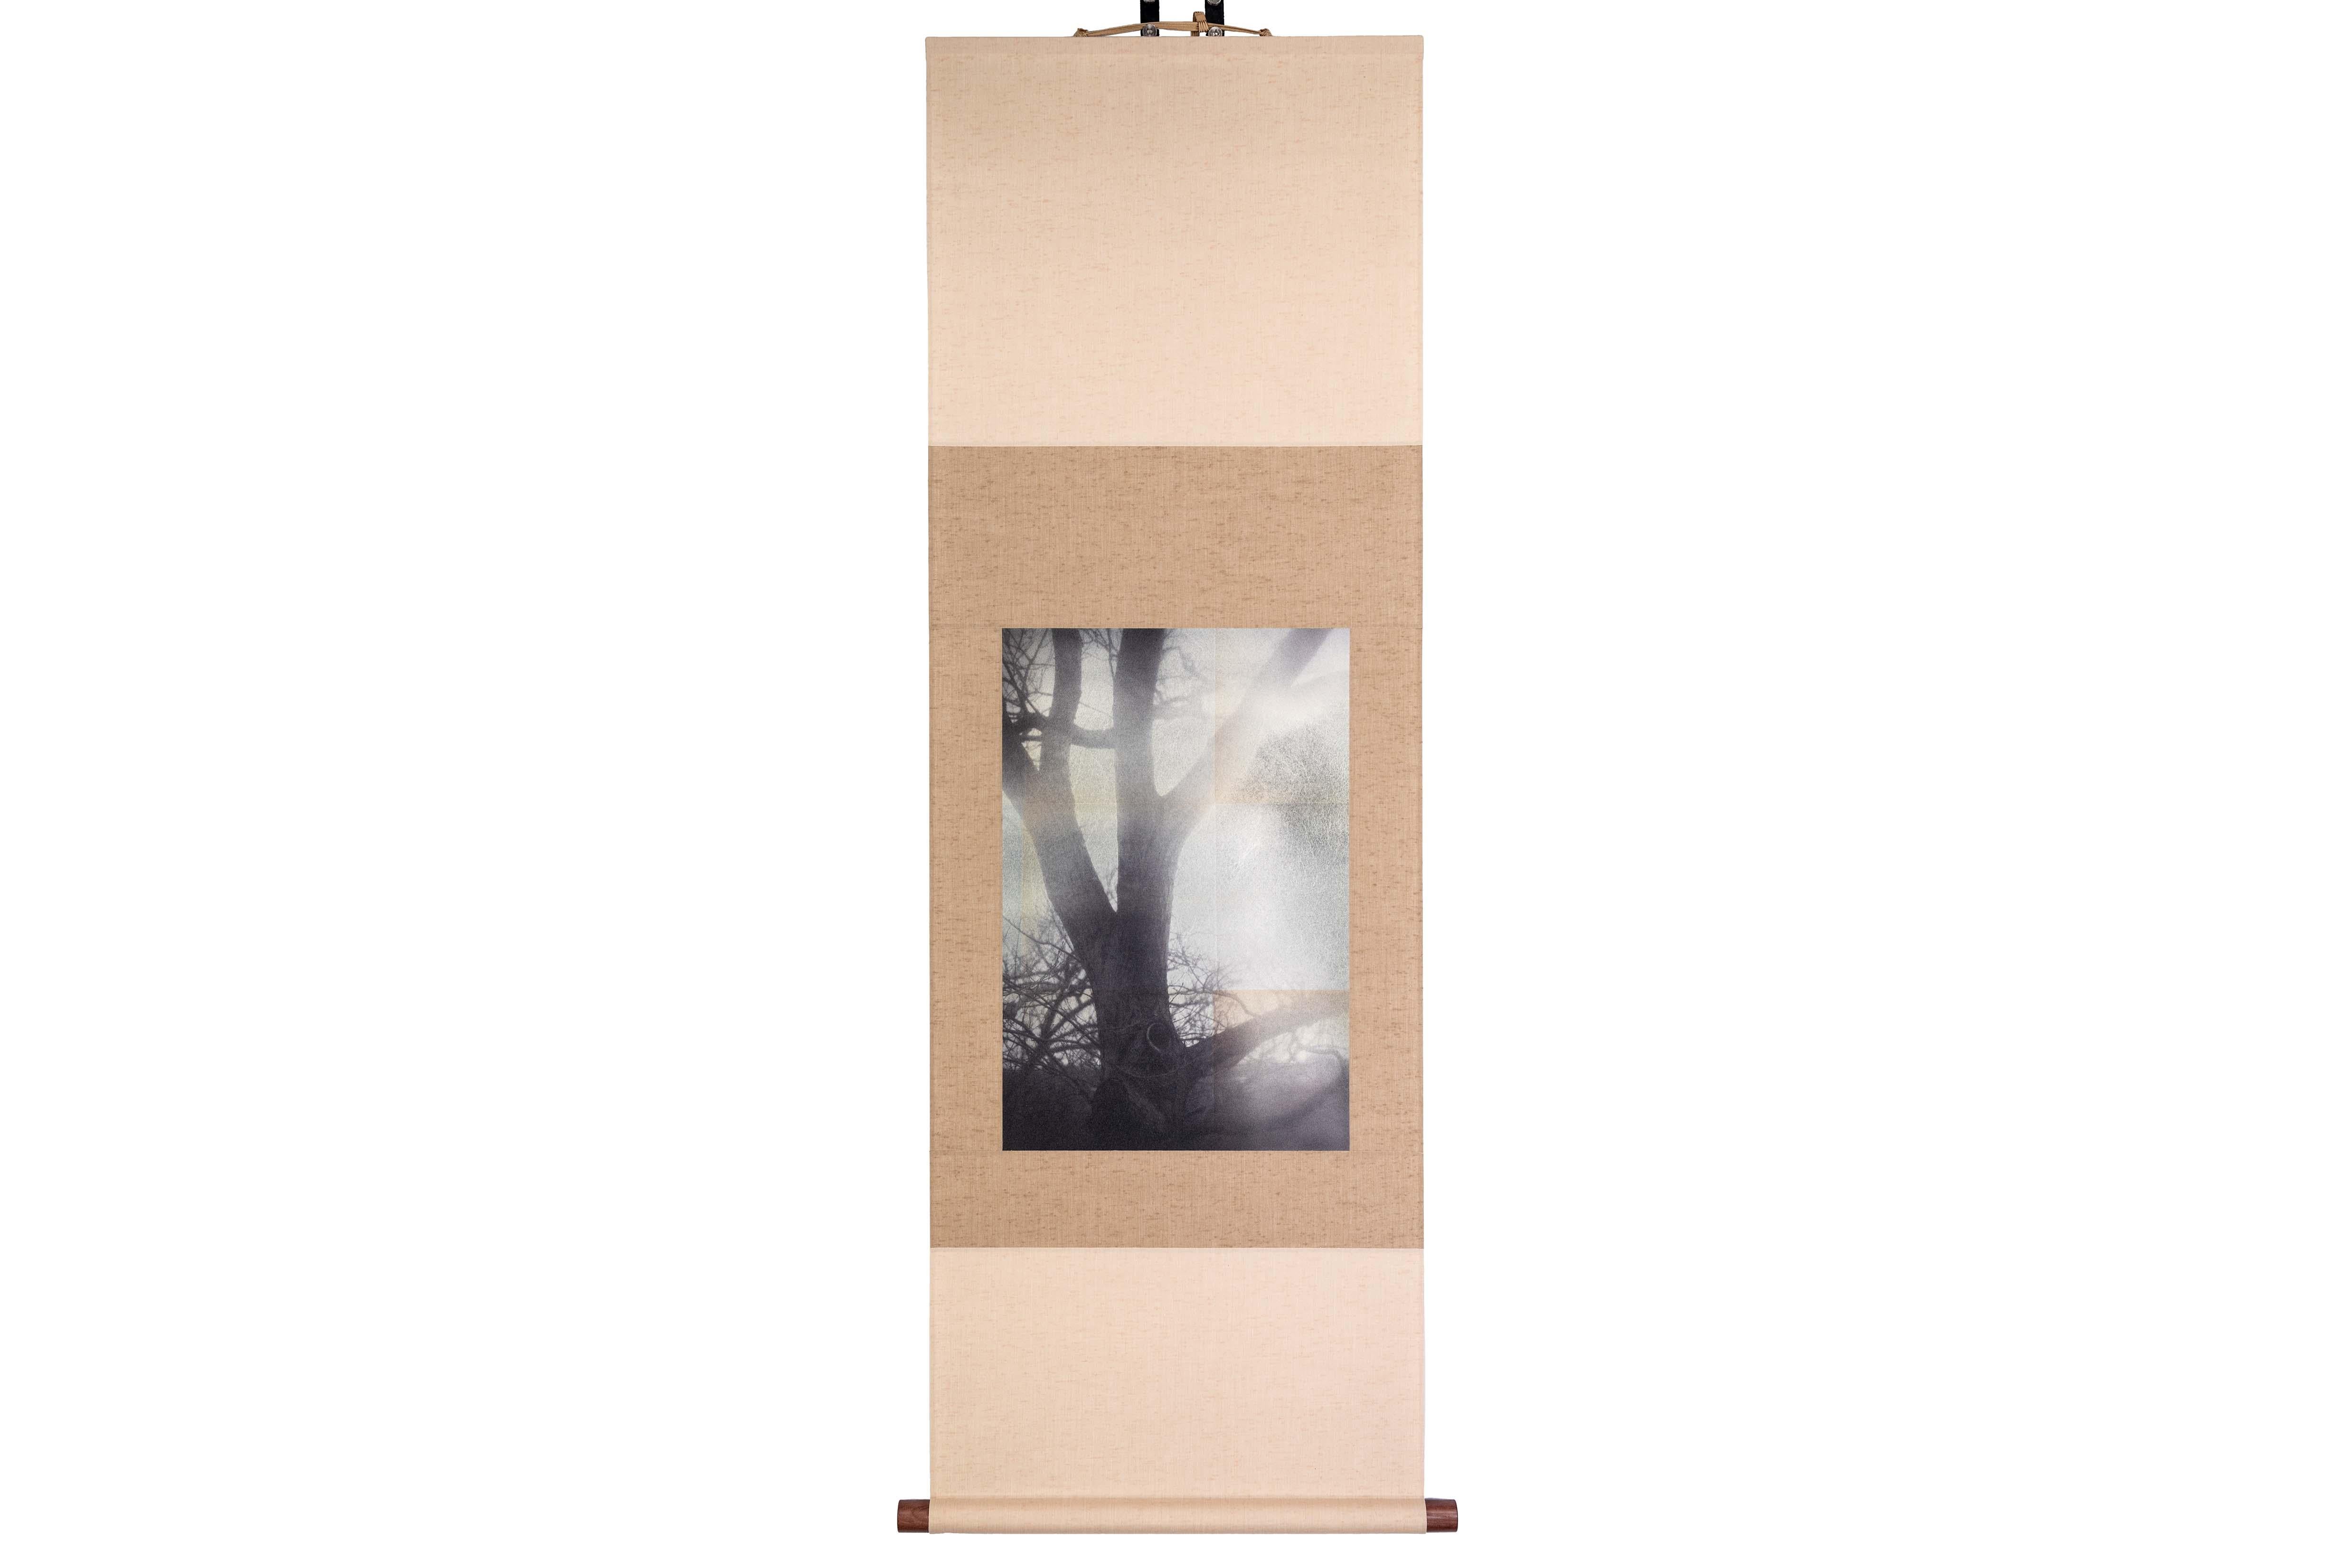 Tirage UV d'une photographie numérique sur feuille d'étain sur papier, monté dans un rouleau de tissu 

Kojun est un artiste autodidacte américain multimédia né en 1977 et basé à Tokyo, au Japon, depuis 1999. Le projet Kojun, lancé en 2010, explore